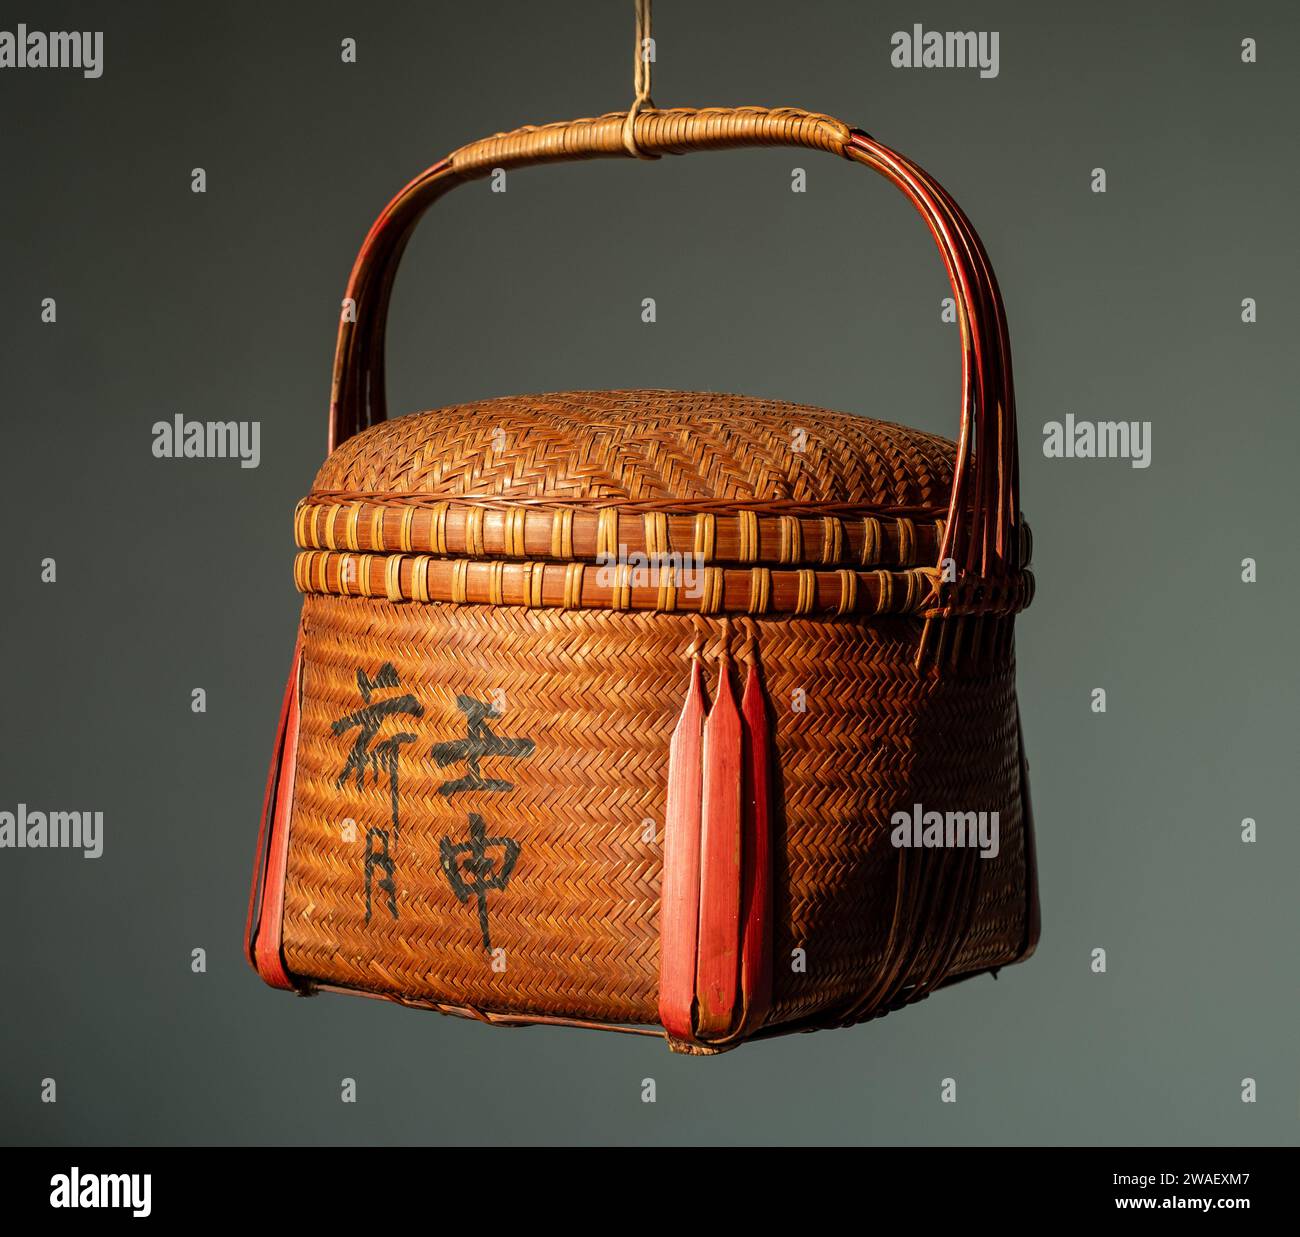 Un cesto cinese di squisita fattura artigianale realizzato in bambù nel 1932. Foto Stock